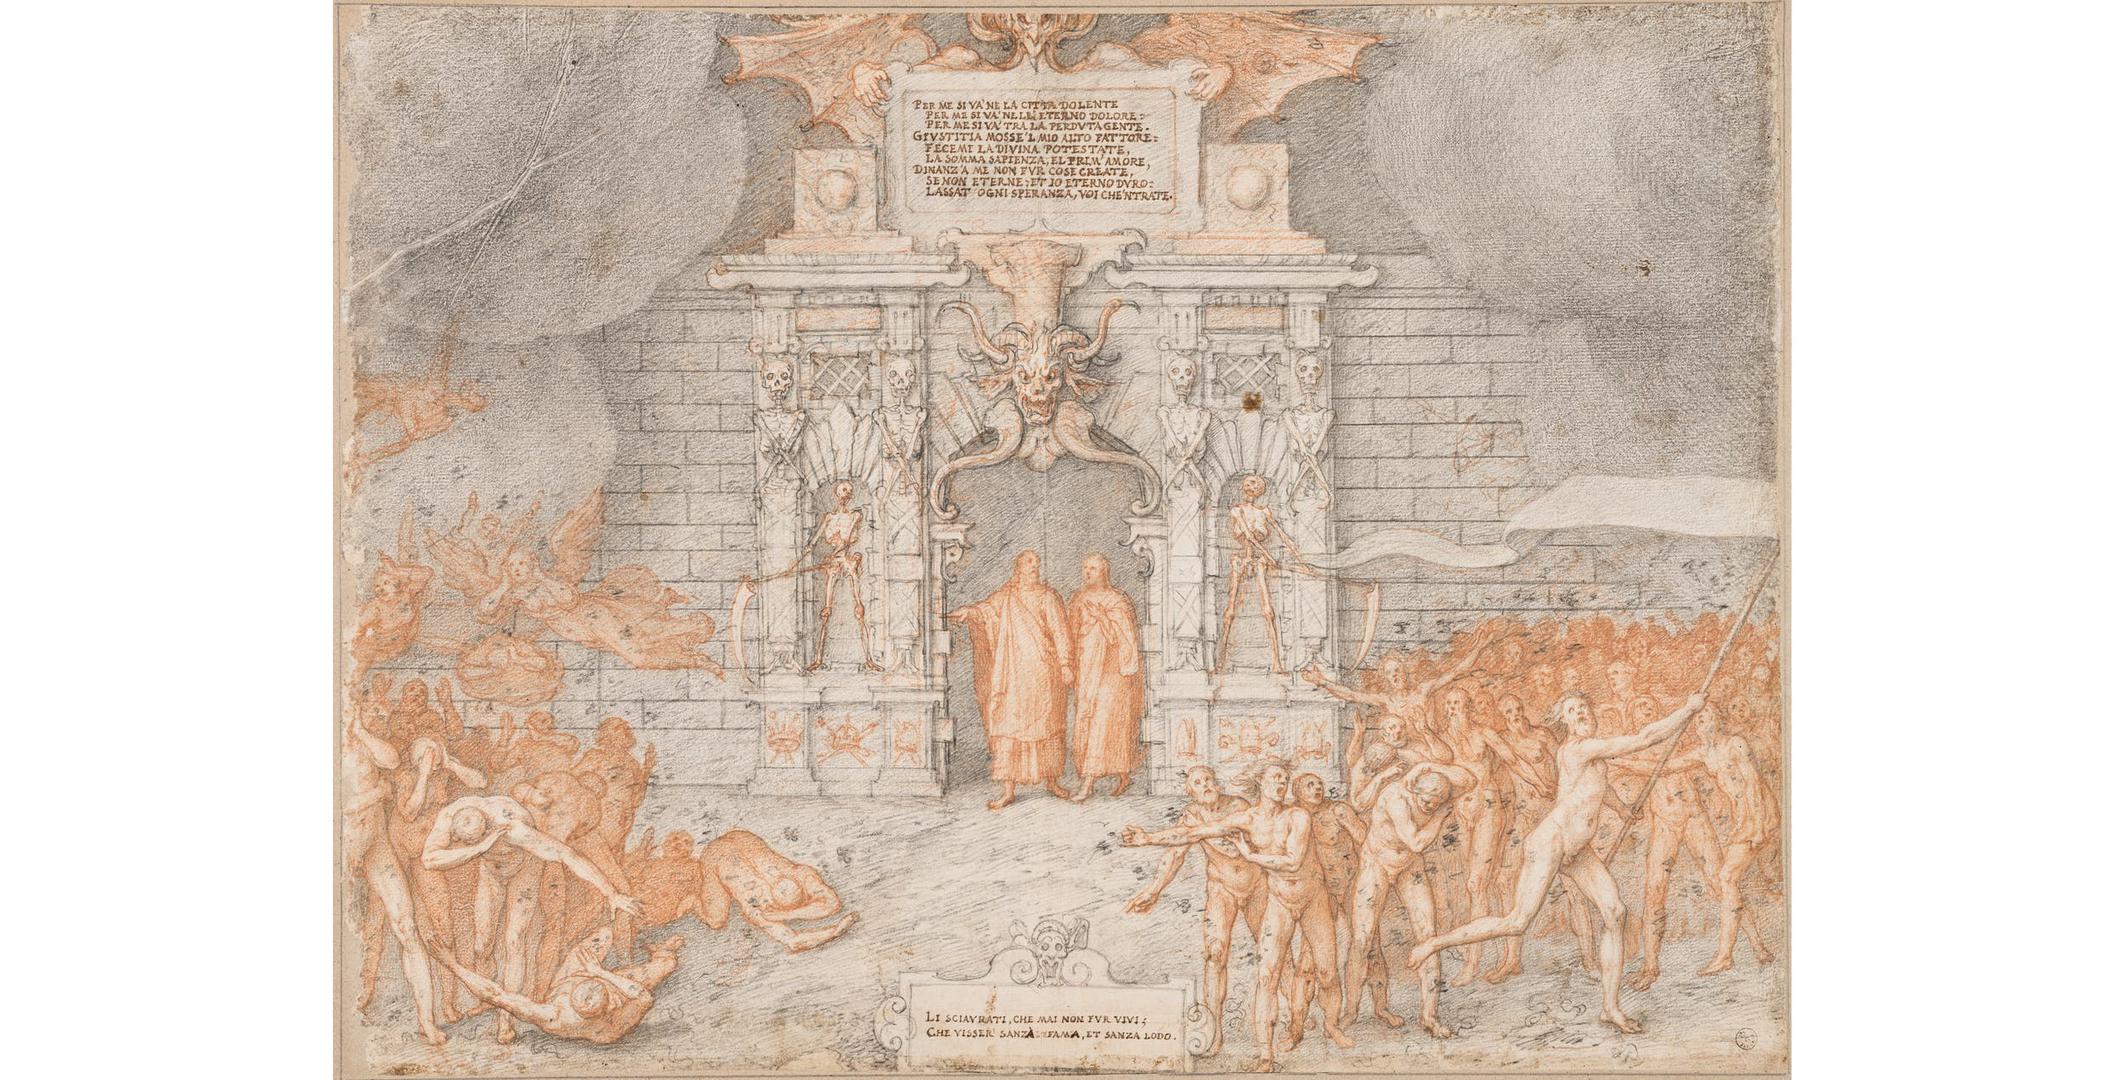 Galerija Uffizi - crteži "Božanstvene komedije" renesansnog slikara Federica Zuccarija